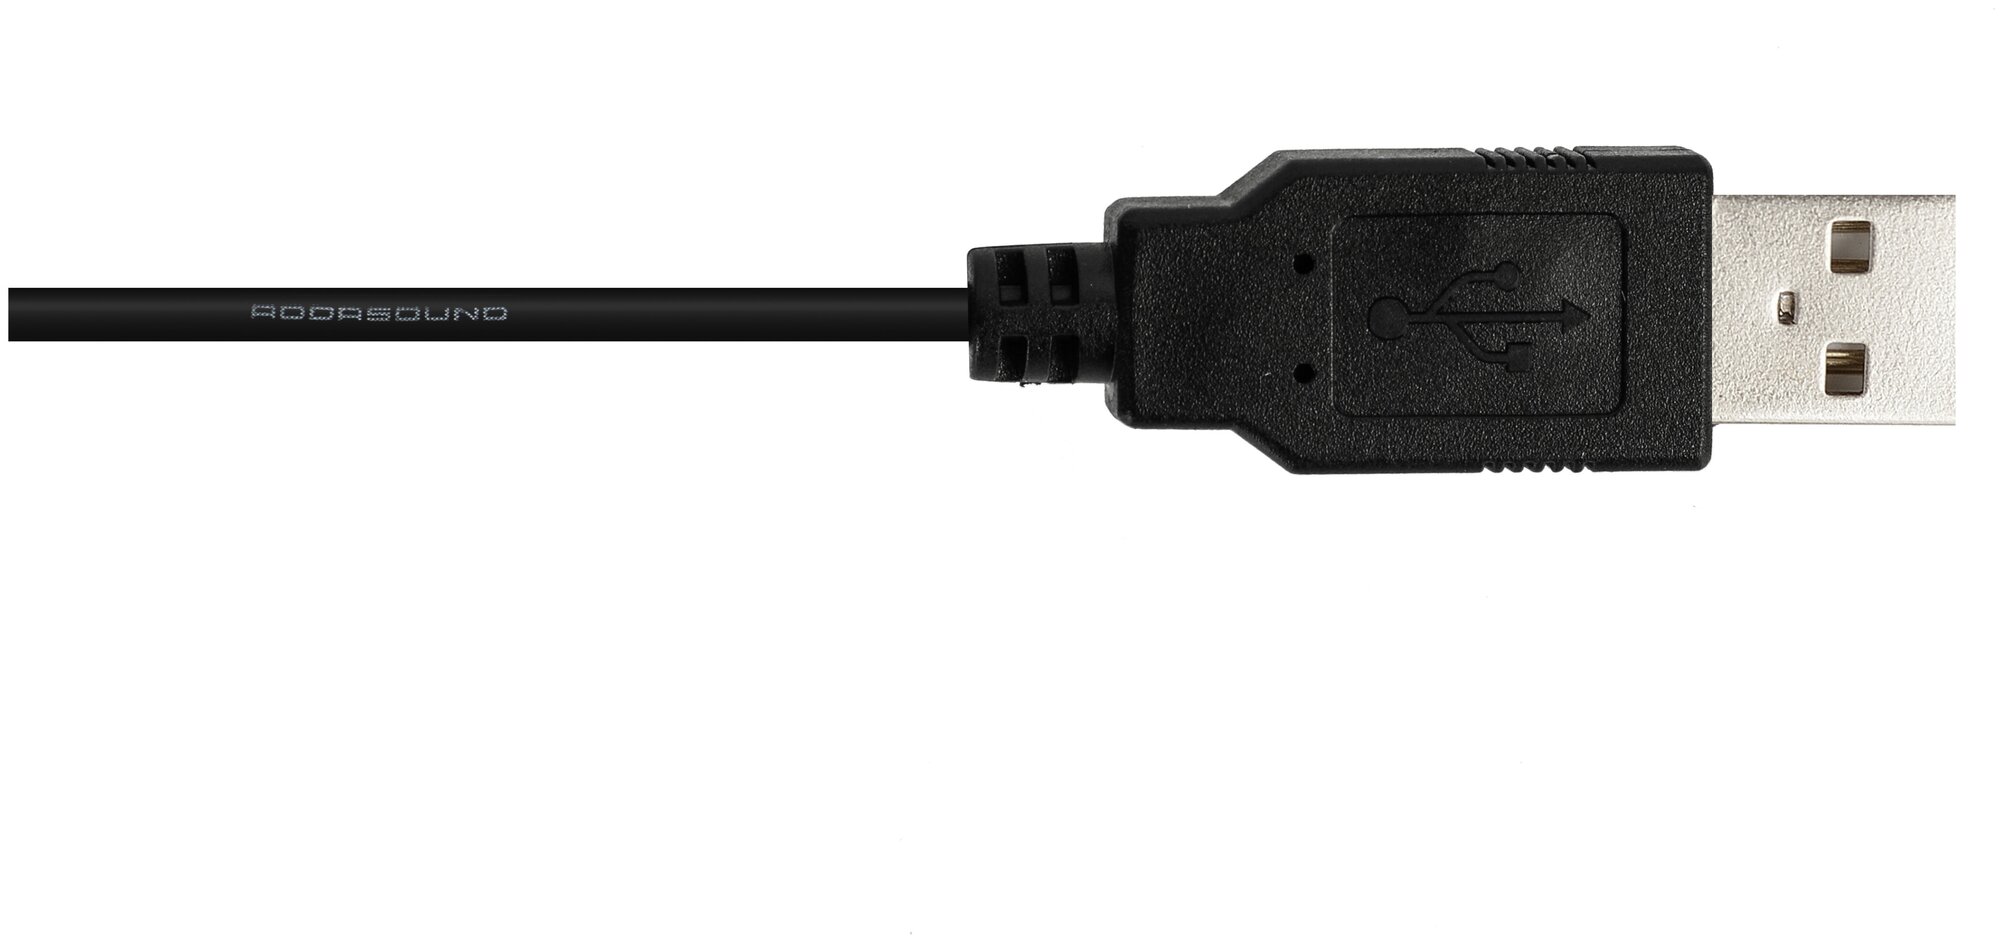 Профессиональная гарнитура с микрофоном для компьютера ADDASOUND Epic 301, USB, шумоподавление, 100% UC совместимость, цвет черно-серый, (ADD-EPIC-301)